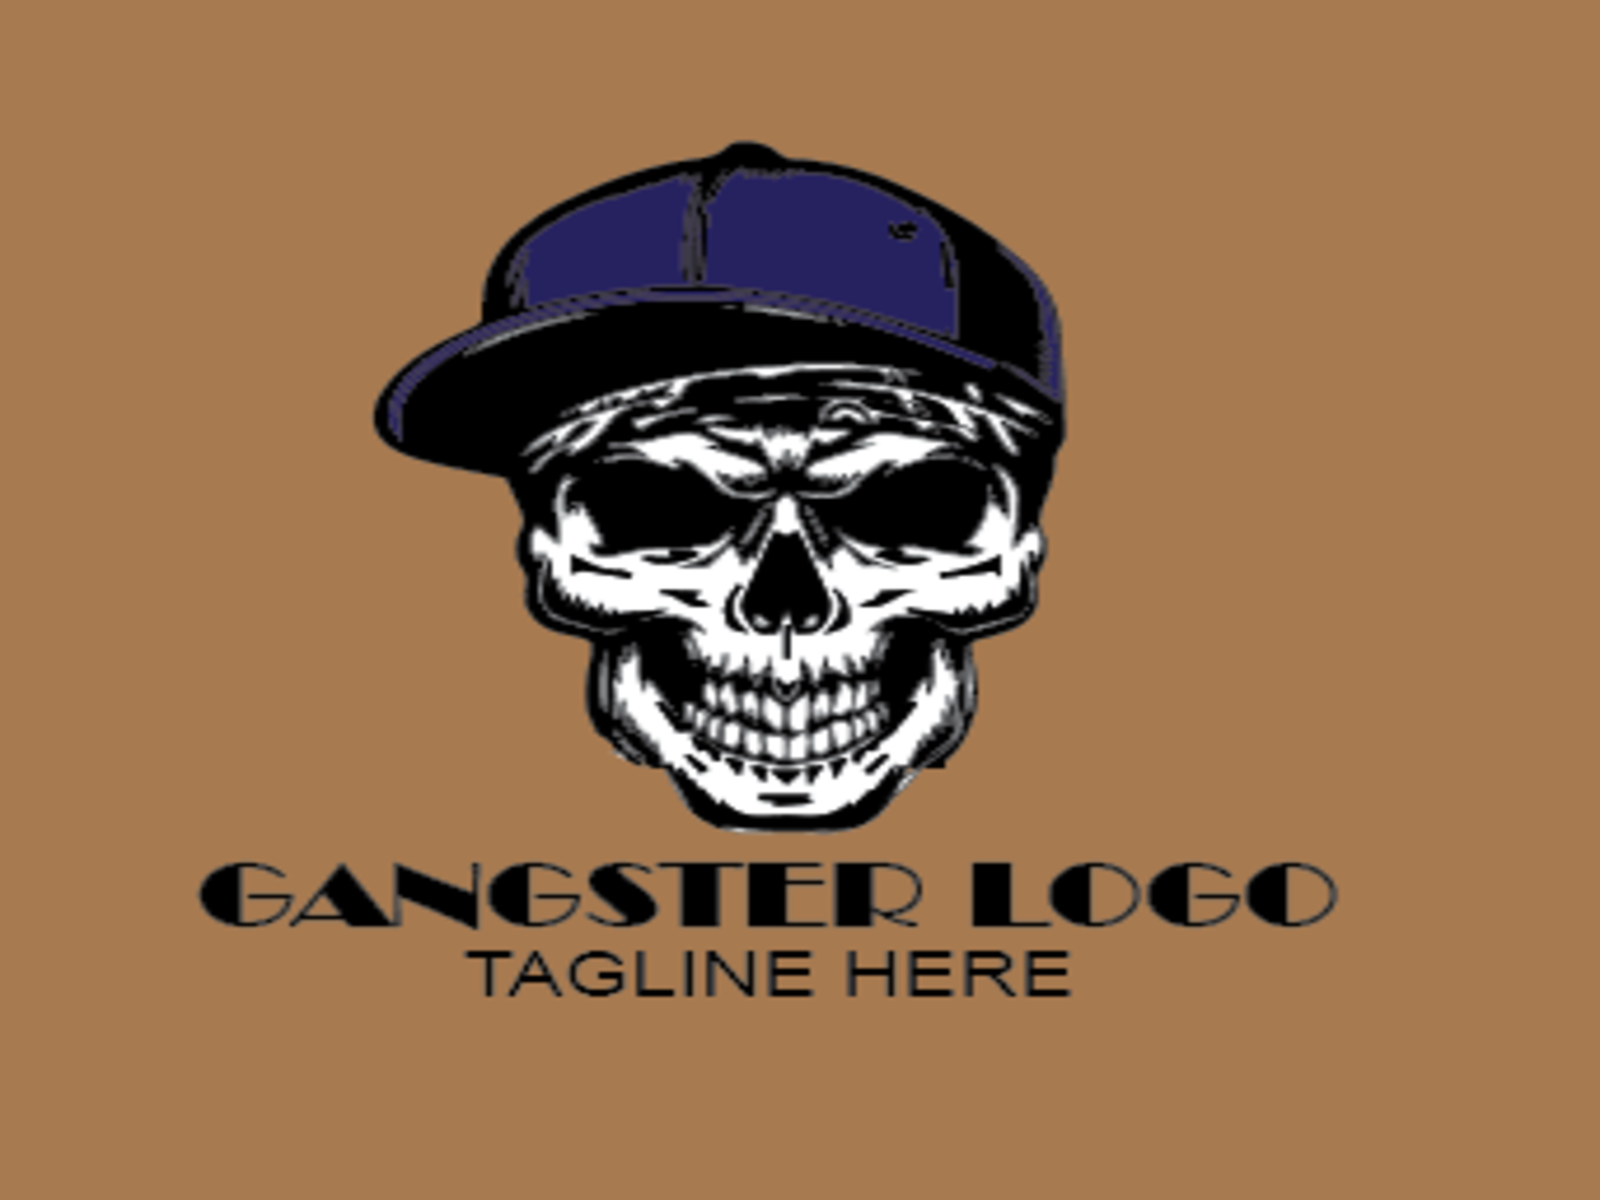 gangster logo